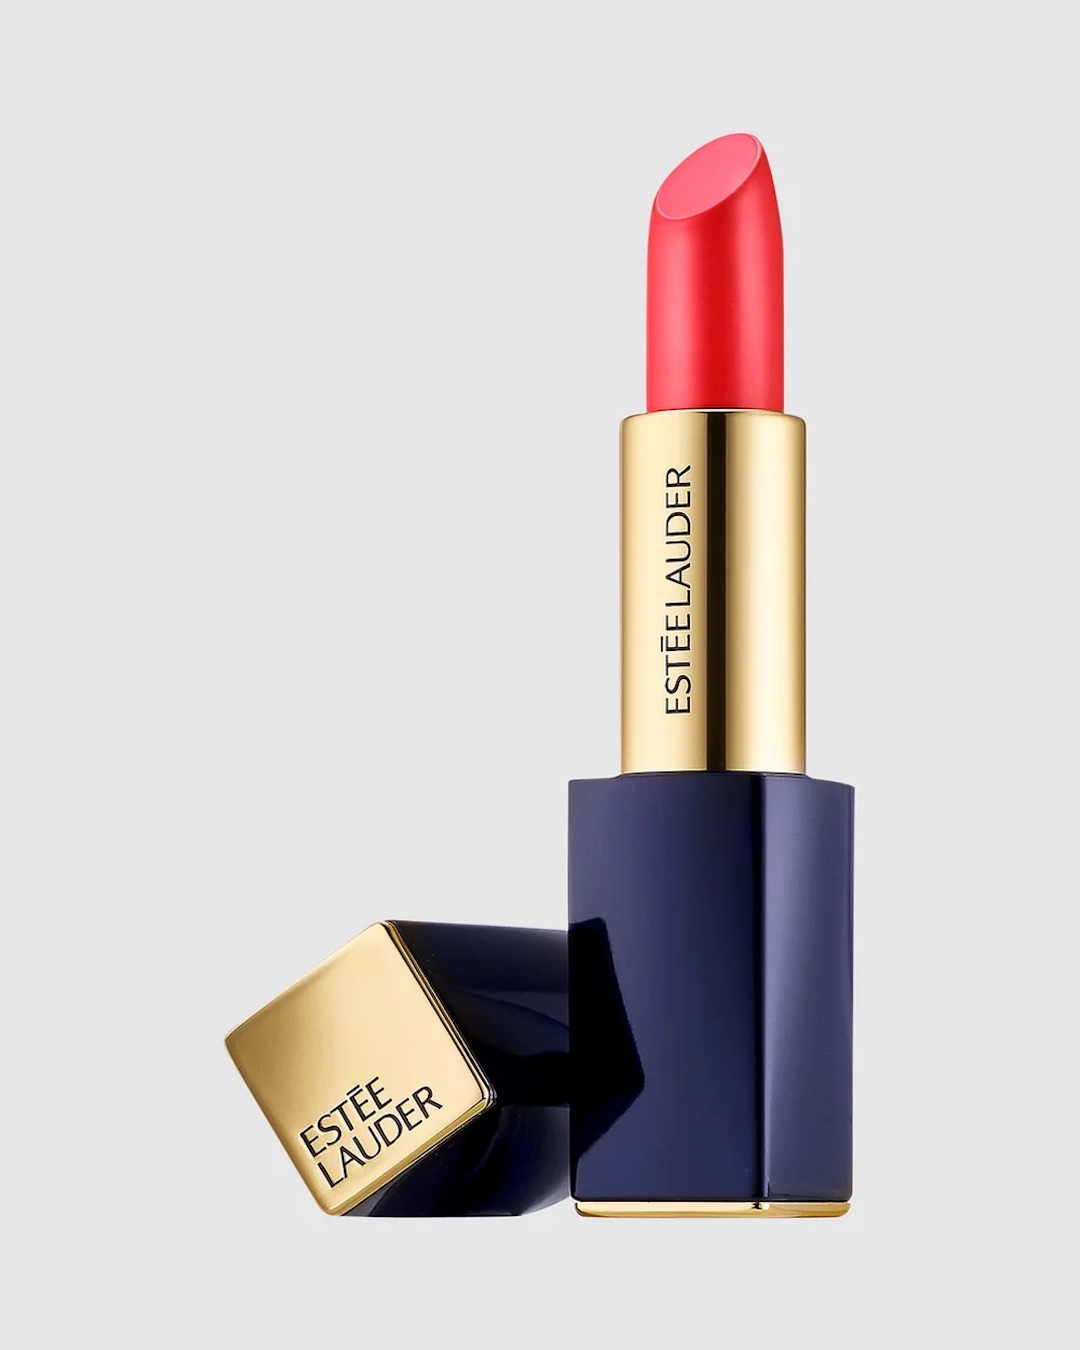 Estee Lauder red lipstick